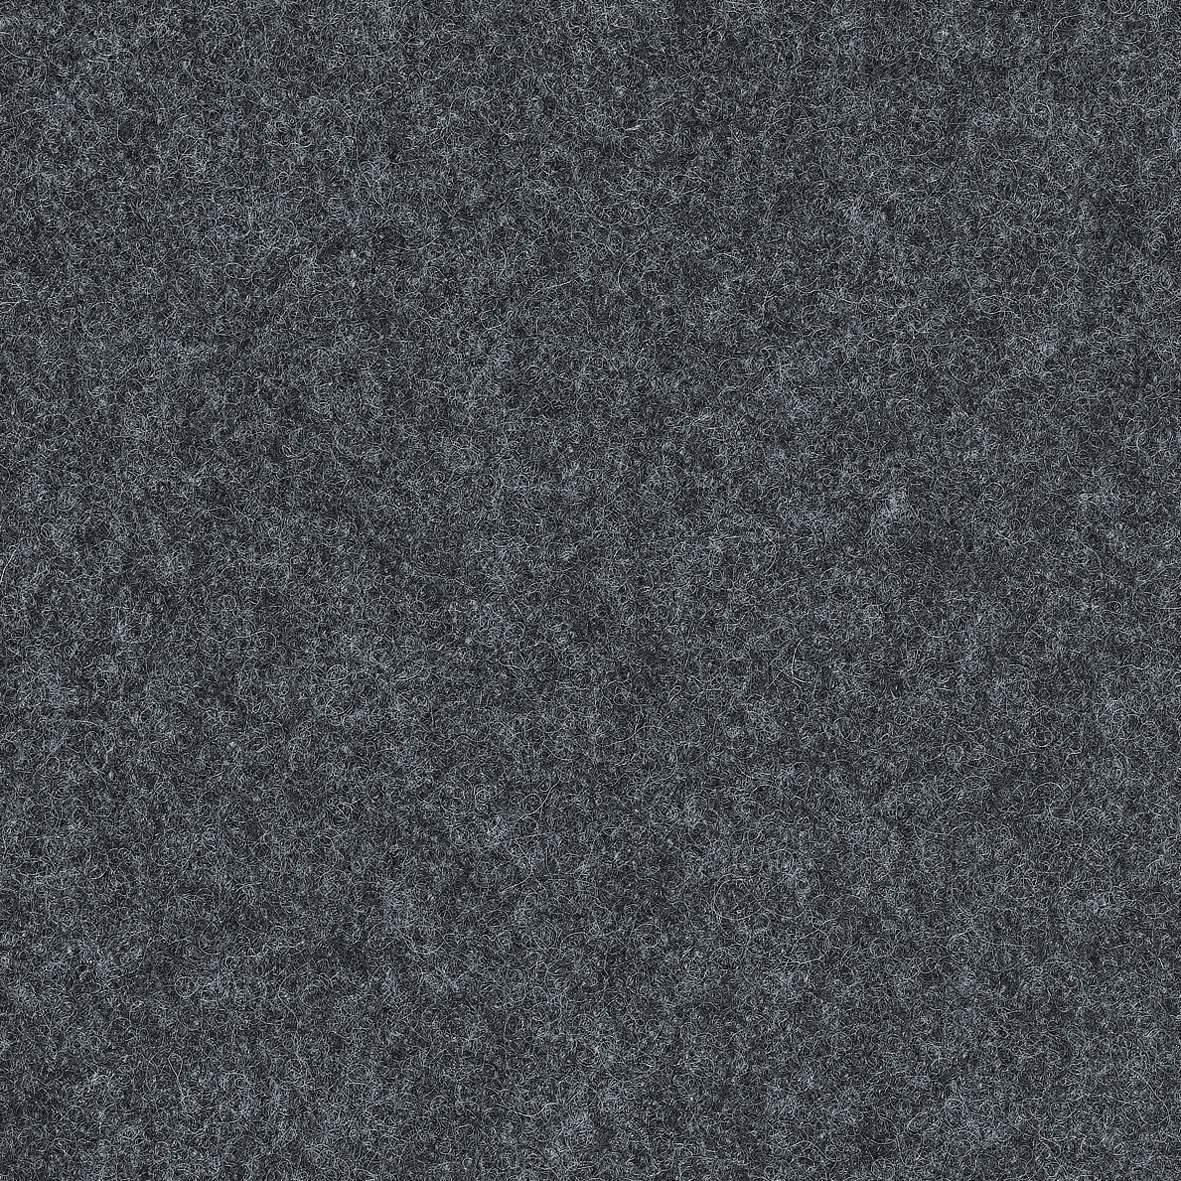 BÜROHOCKER Filz Weiß, Dunkelgrau  - Dunkelgrau/Weiß, Basics, Textil/Metall (55/45,66/55cm) - Aeris